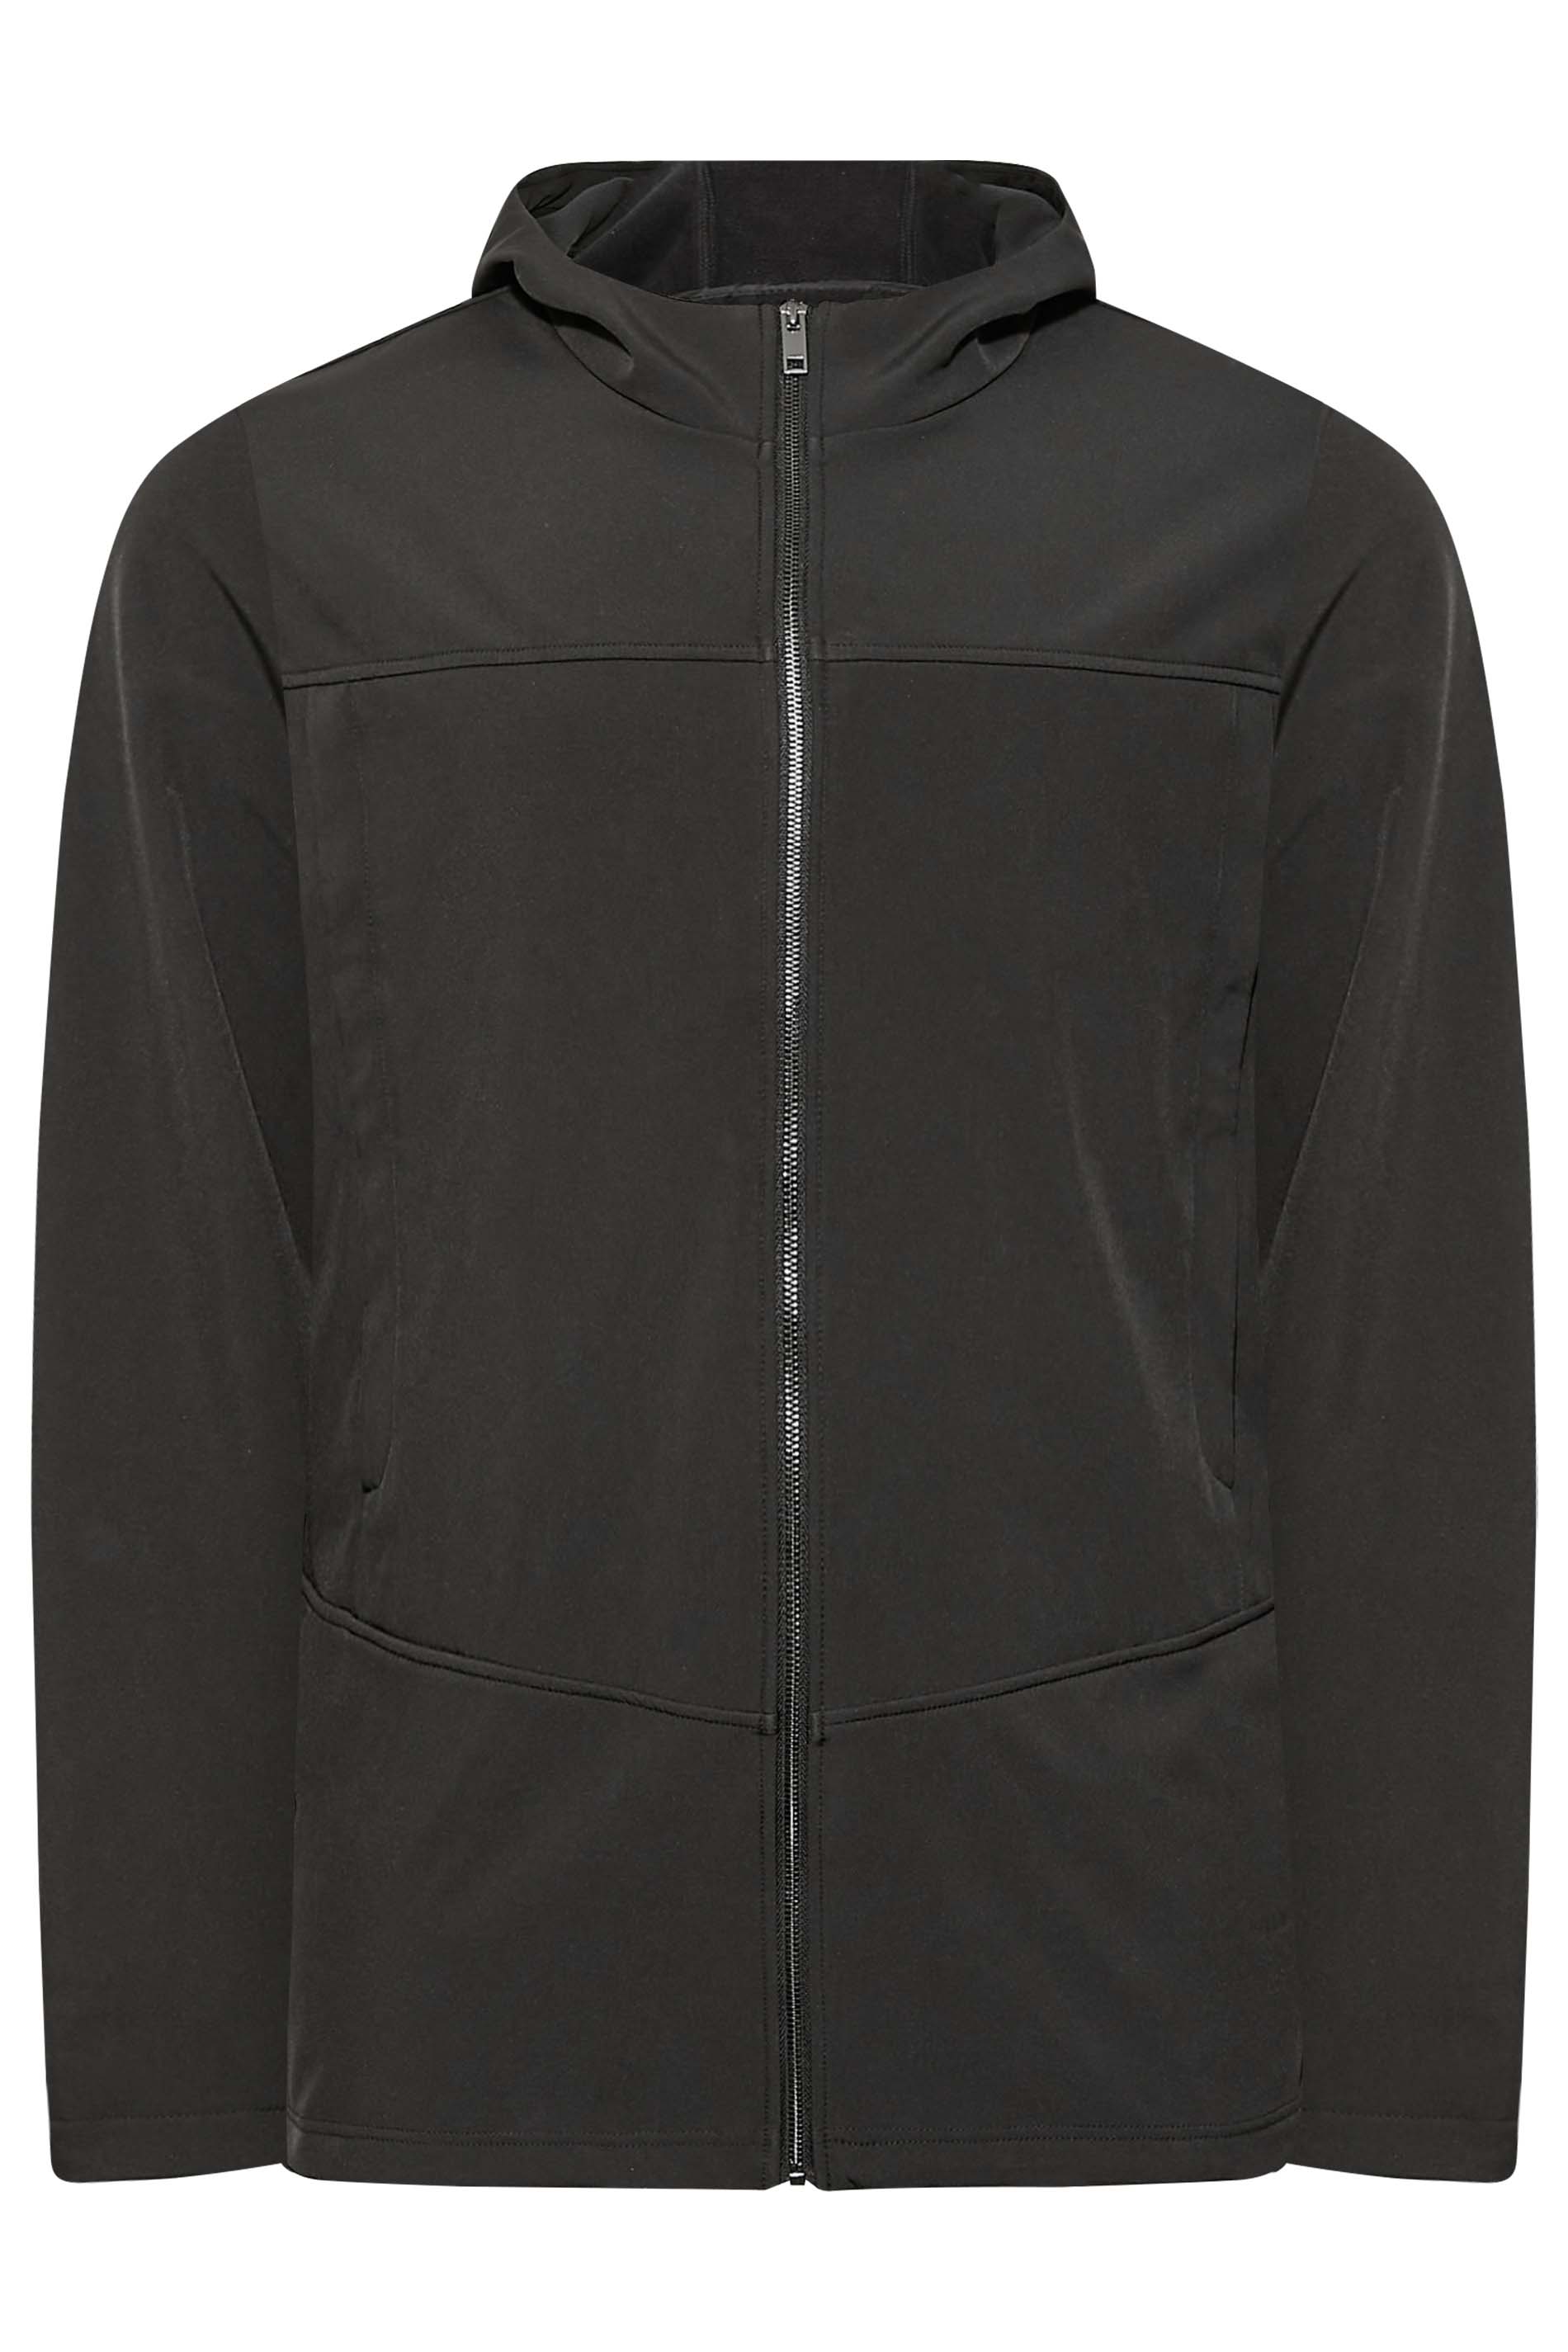 BadRhino Big & Tall Black Softshell Jacket 1